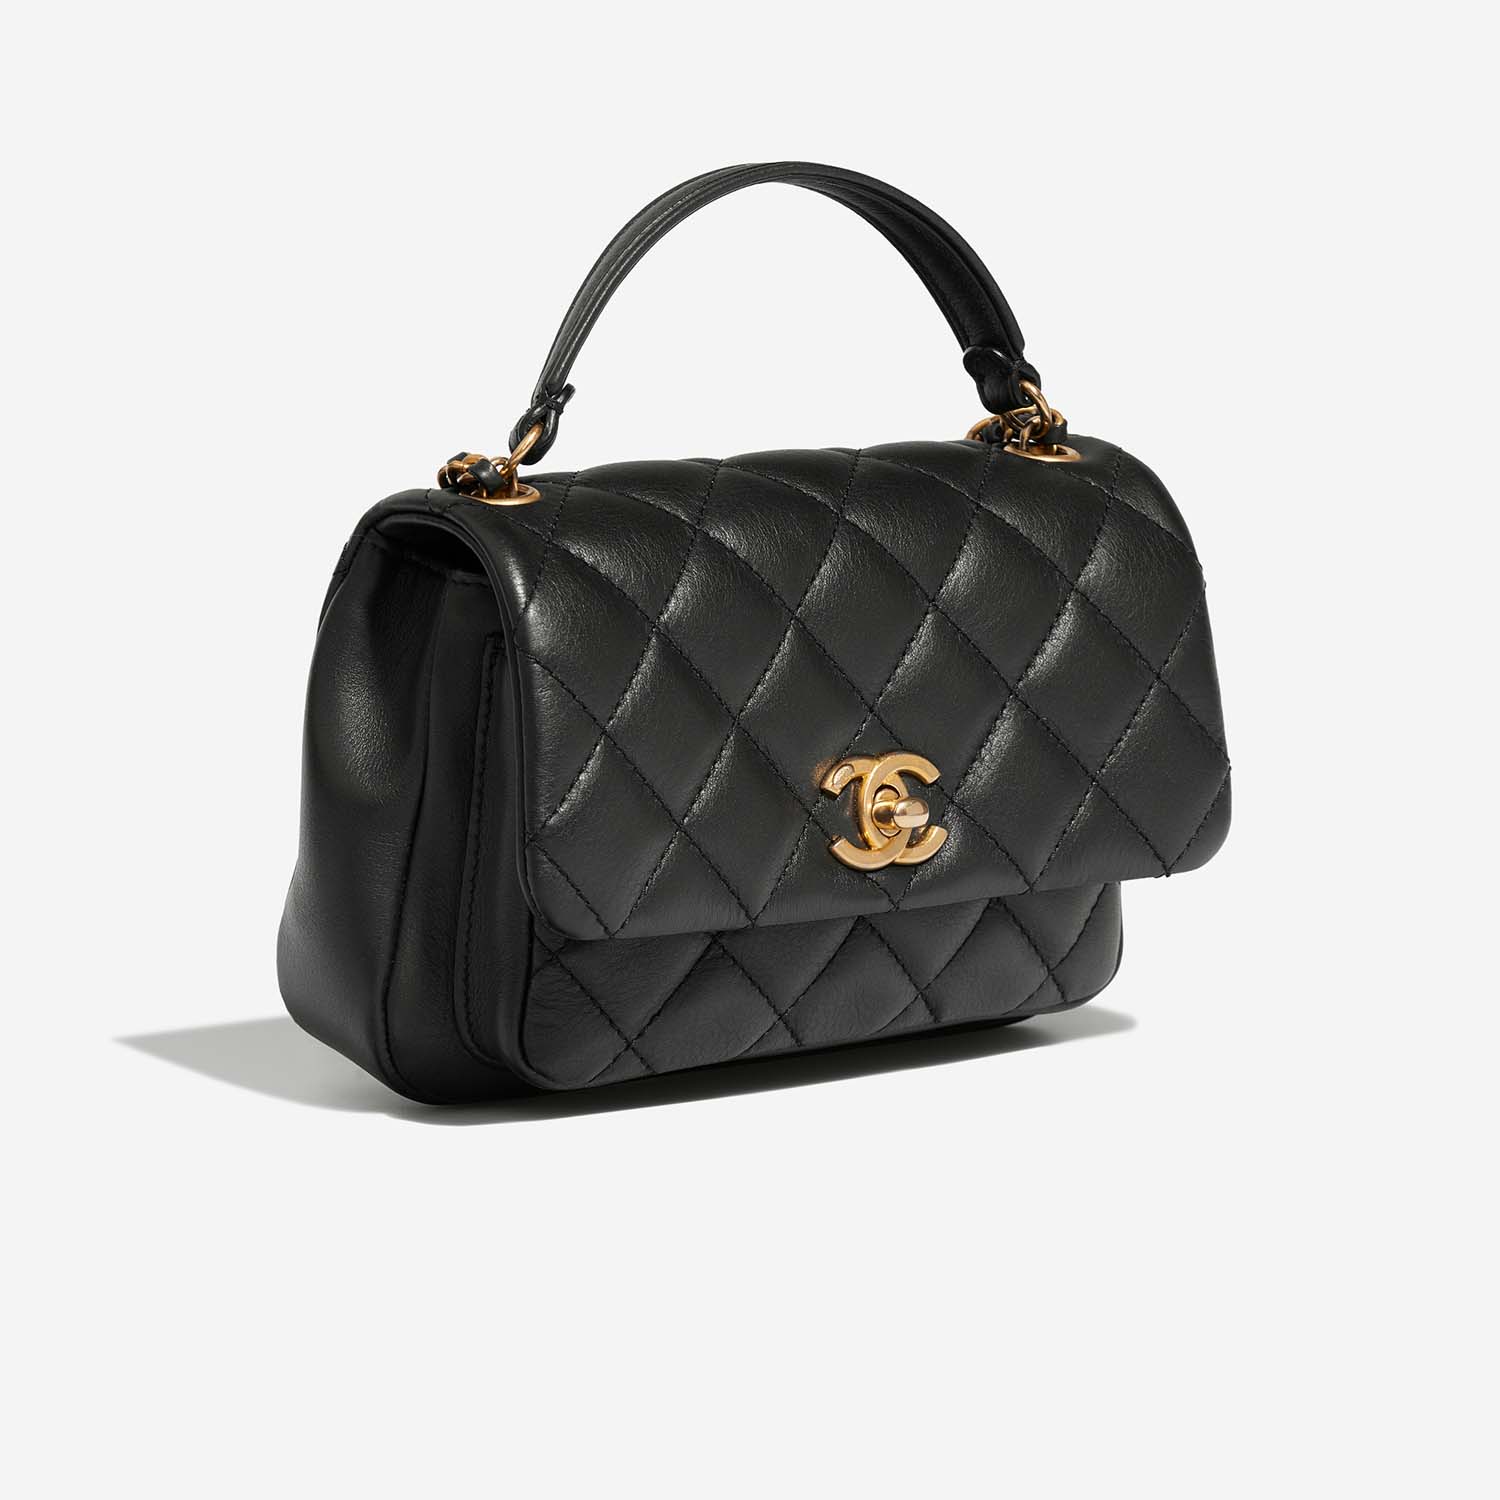 Chanel TimelessHandle Small Black Side Front | Verkaufen Sie Ihre Designer-Tasche auf Saclab.com